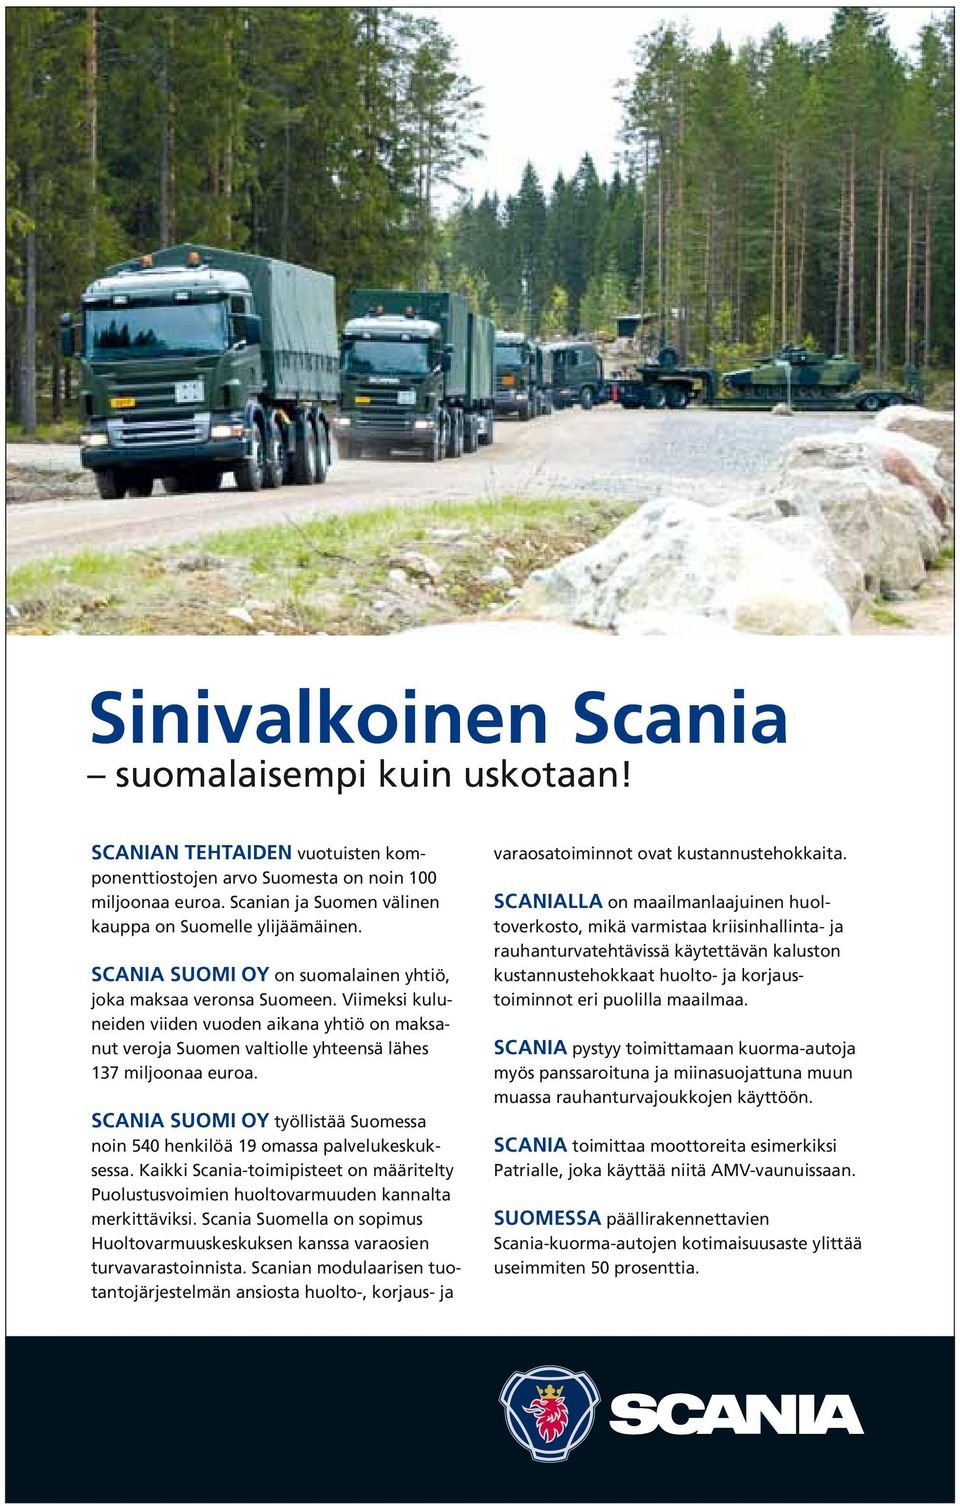 Scania Suomi oy työllistää Suomessa noin 540 henkilöä 19 omassa palvelukeskuksessa. Kaikki Scania-toimipisteet on määritelty Puolustusvoimien huoltovarmuuden kannalta merkittäviksi.